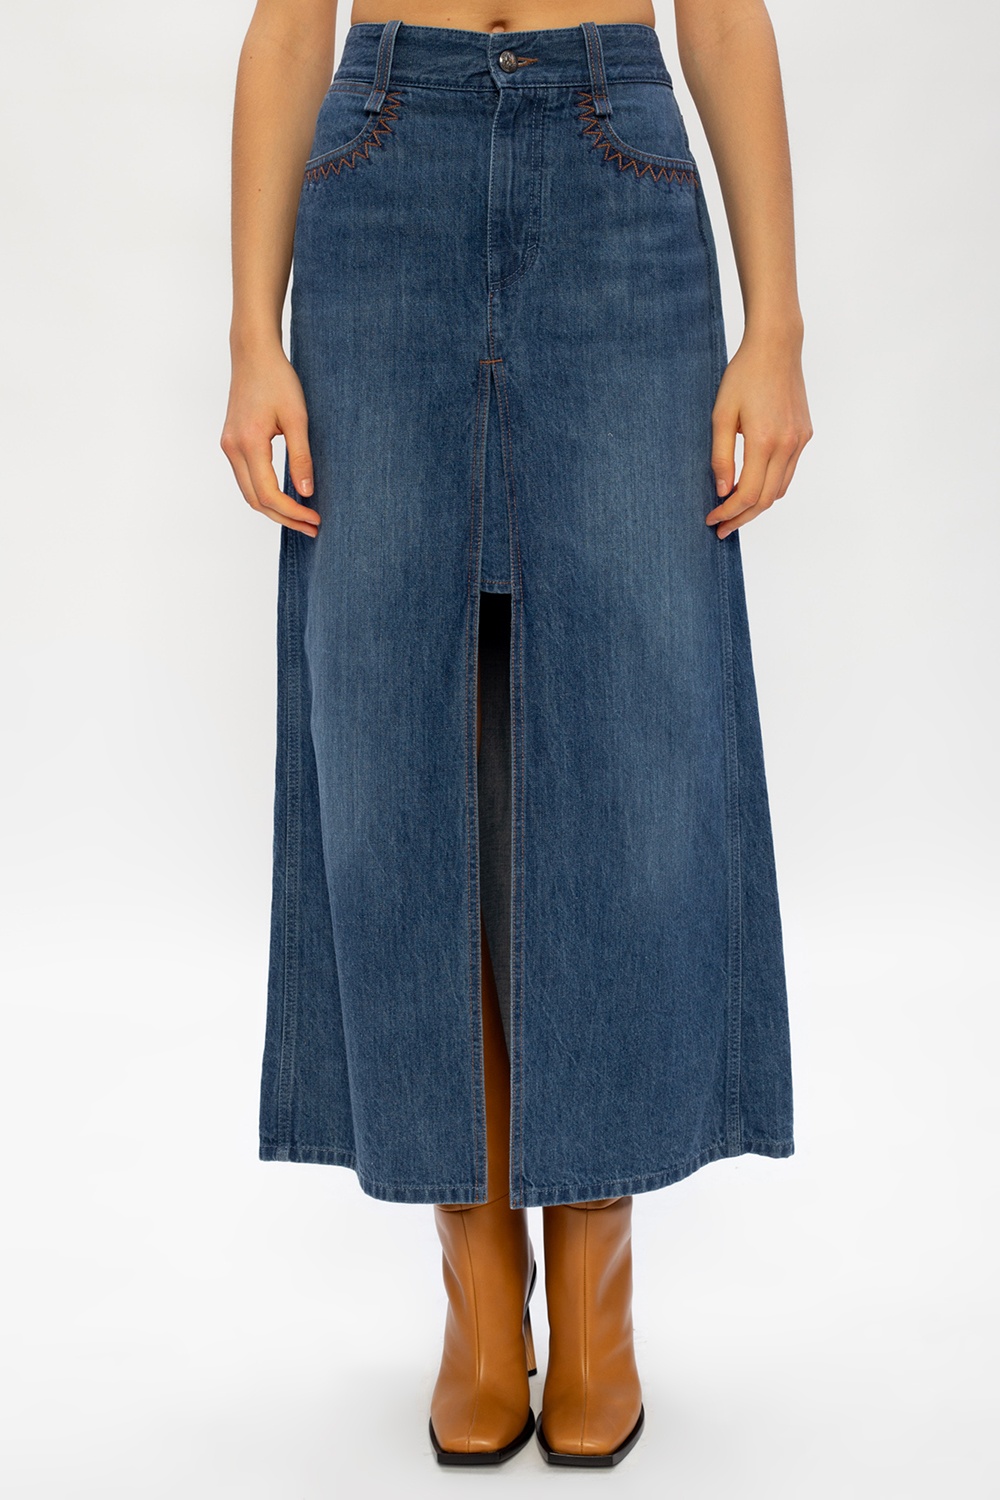 Chloé Denim skirt | Women's Clothing | Vitkac